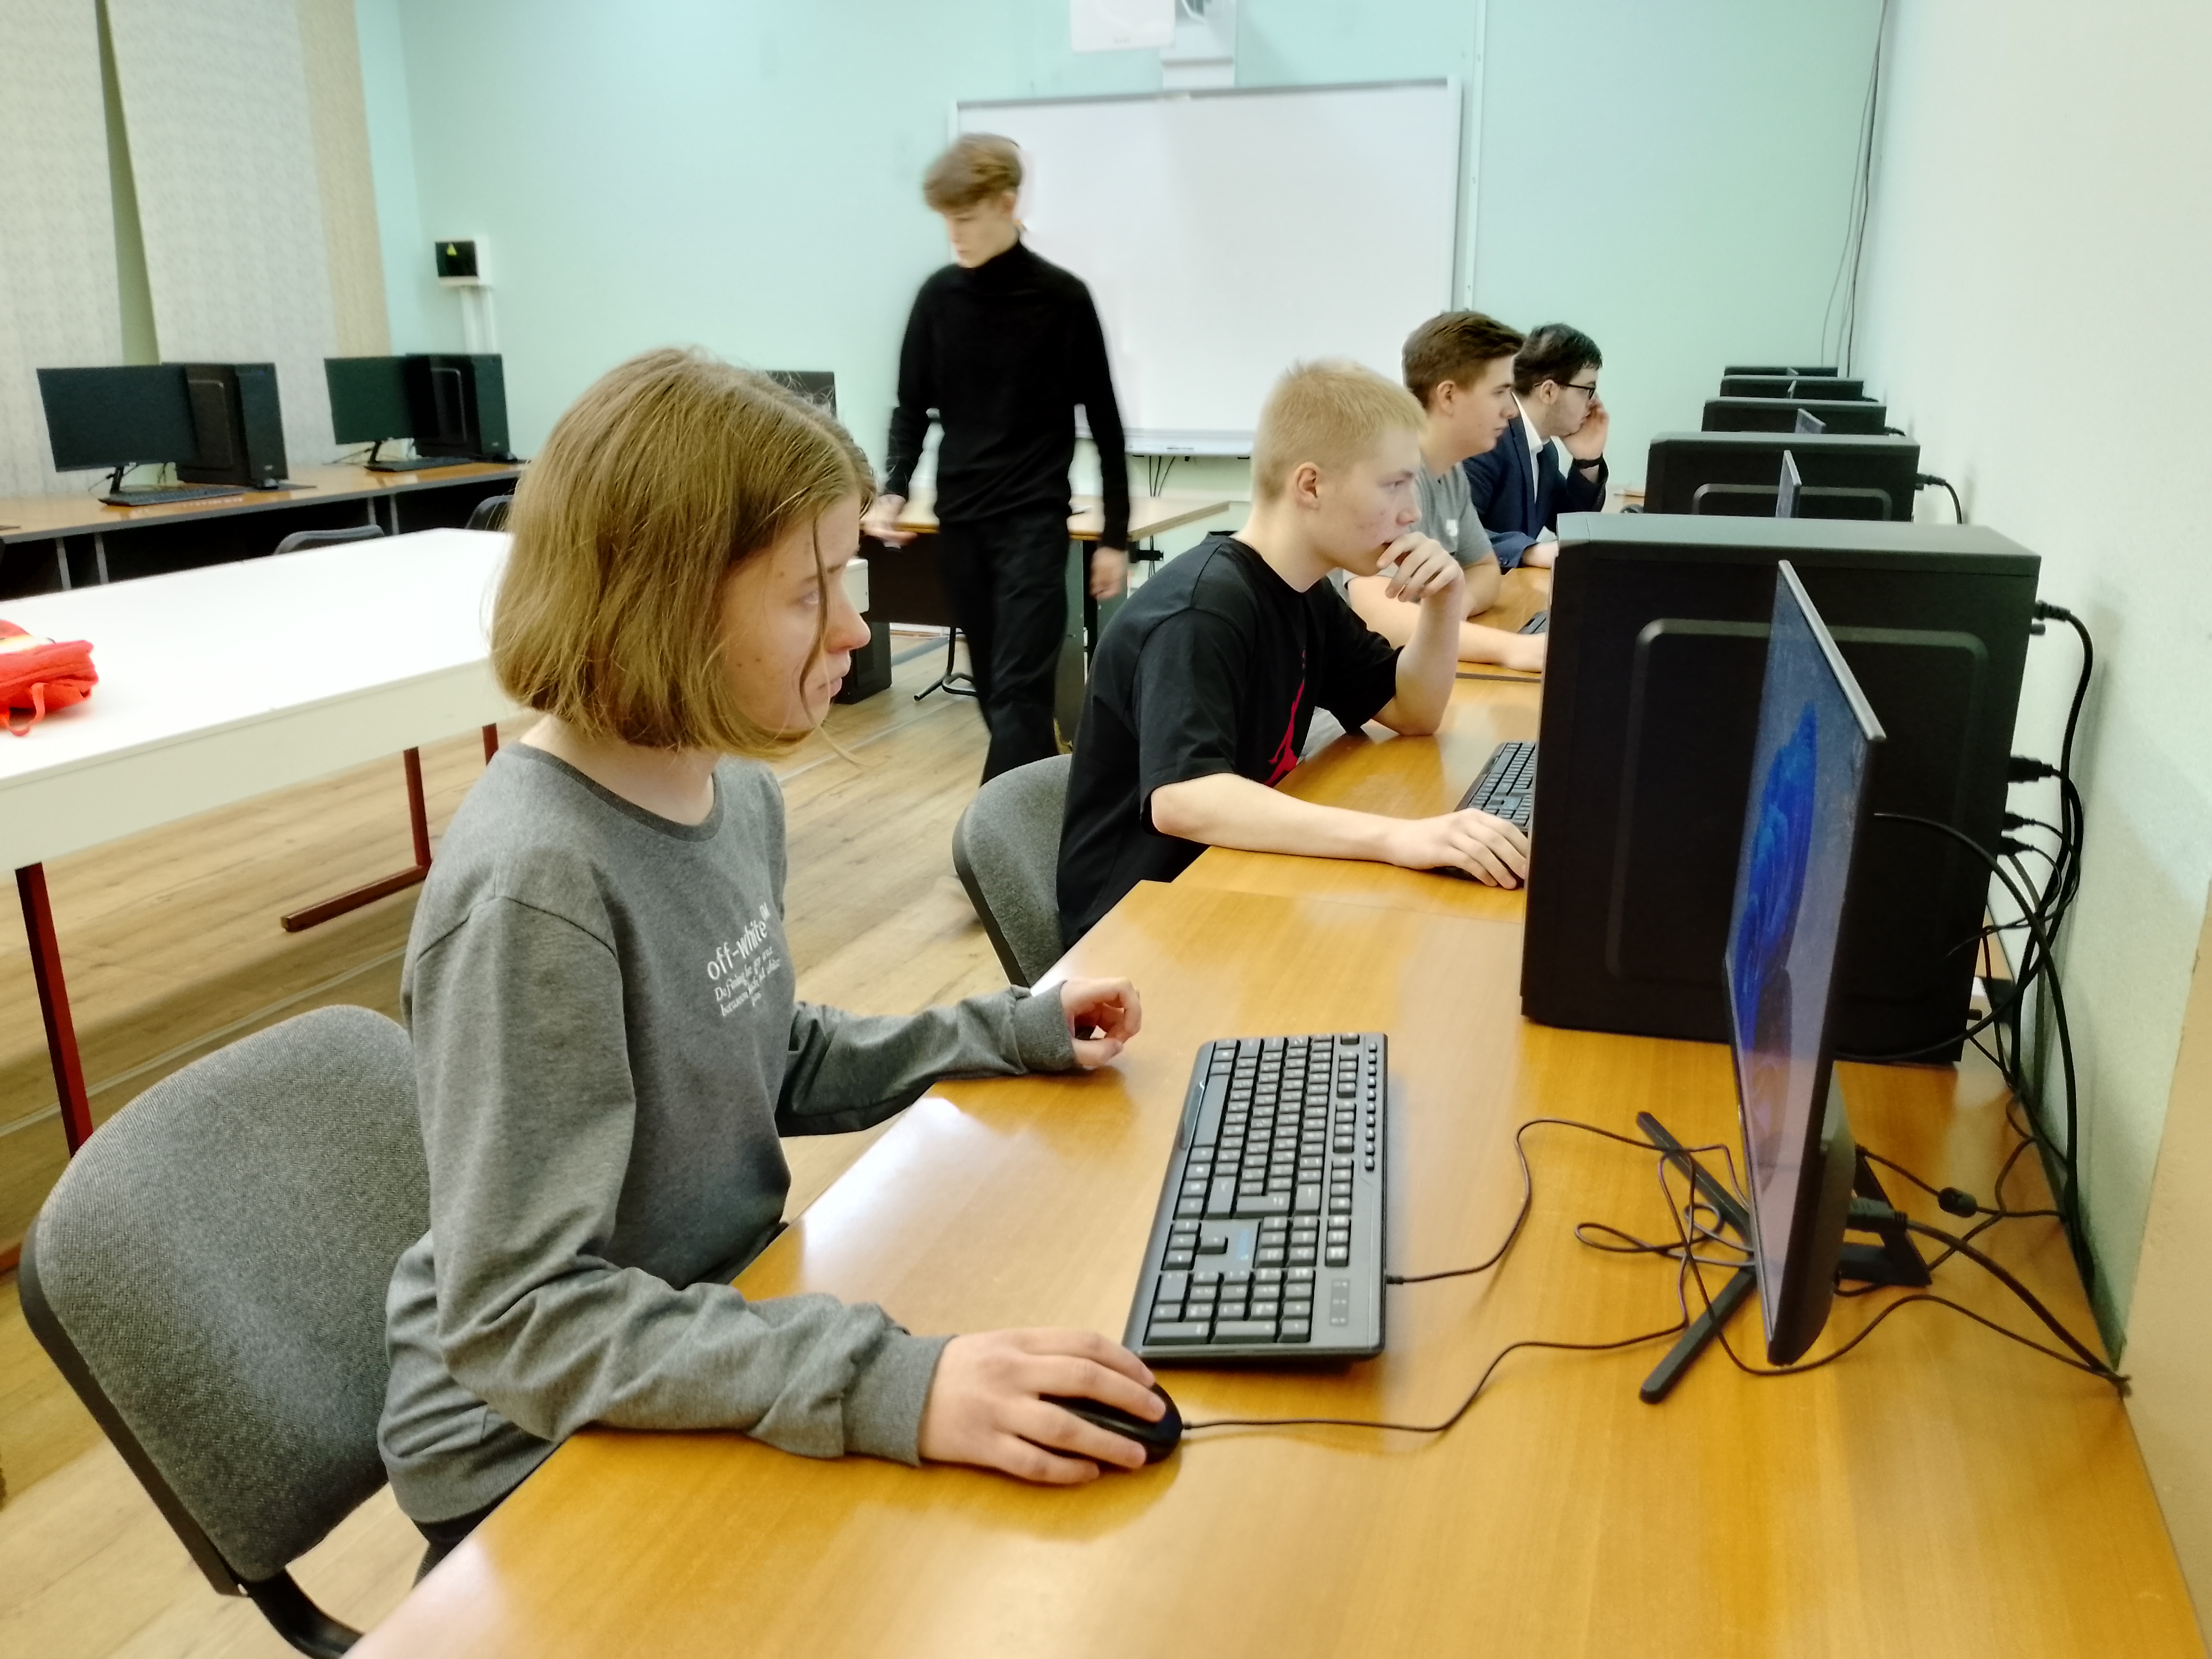 Команда гимназии стала призером муниципальной игре по информатике «В мире информатики»..